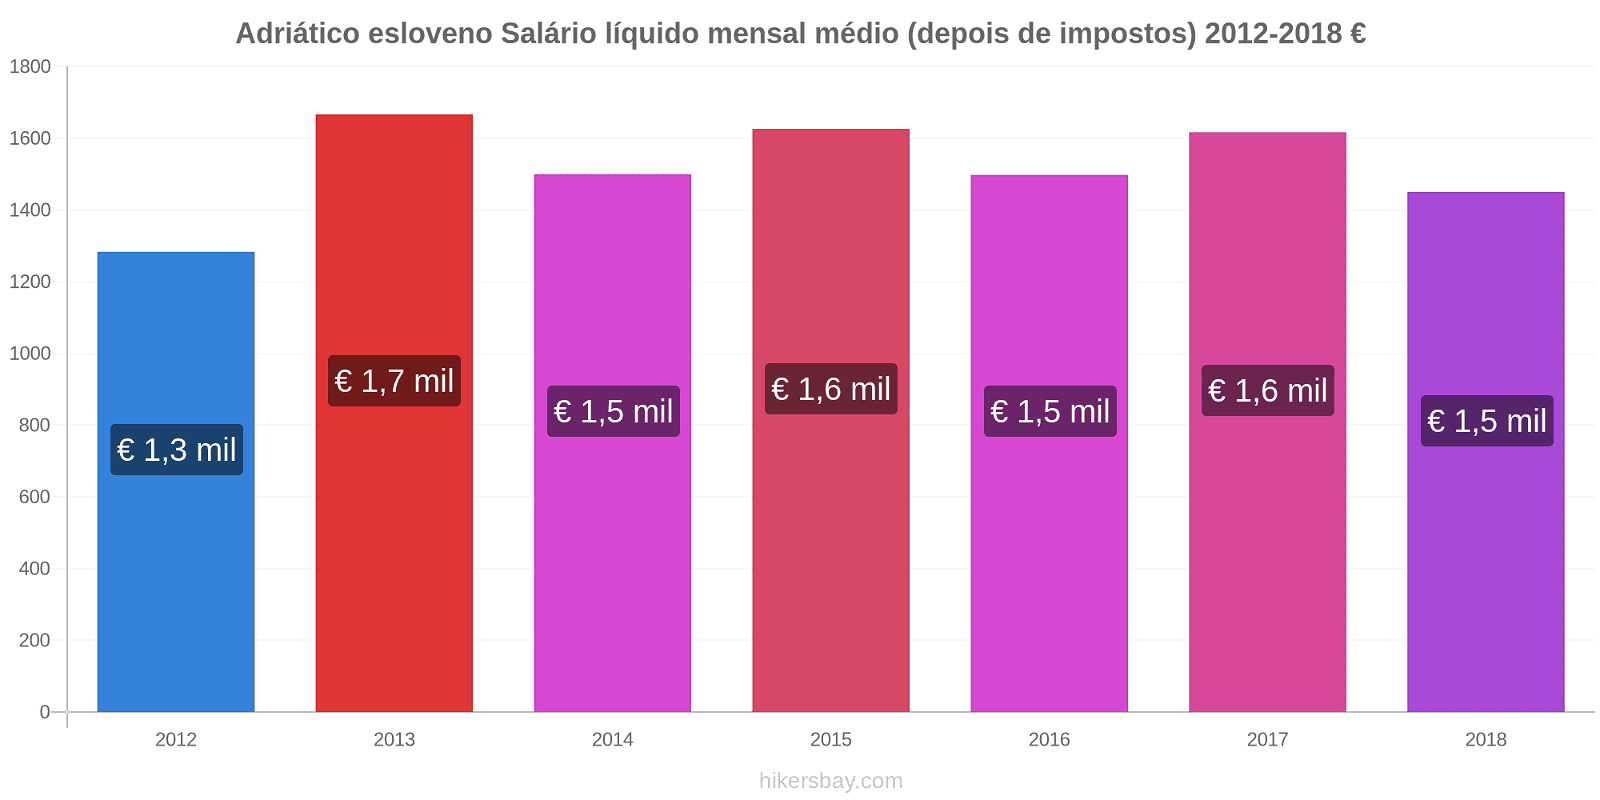 Adriático esloveno variação de preço Salário líquido mensal médio (depois de impostos) hikersbay.com